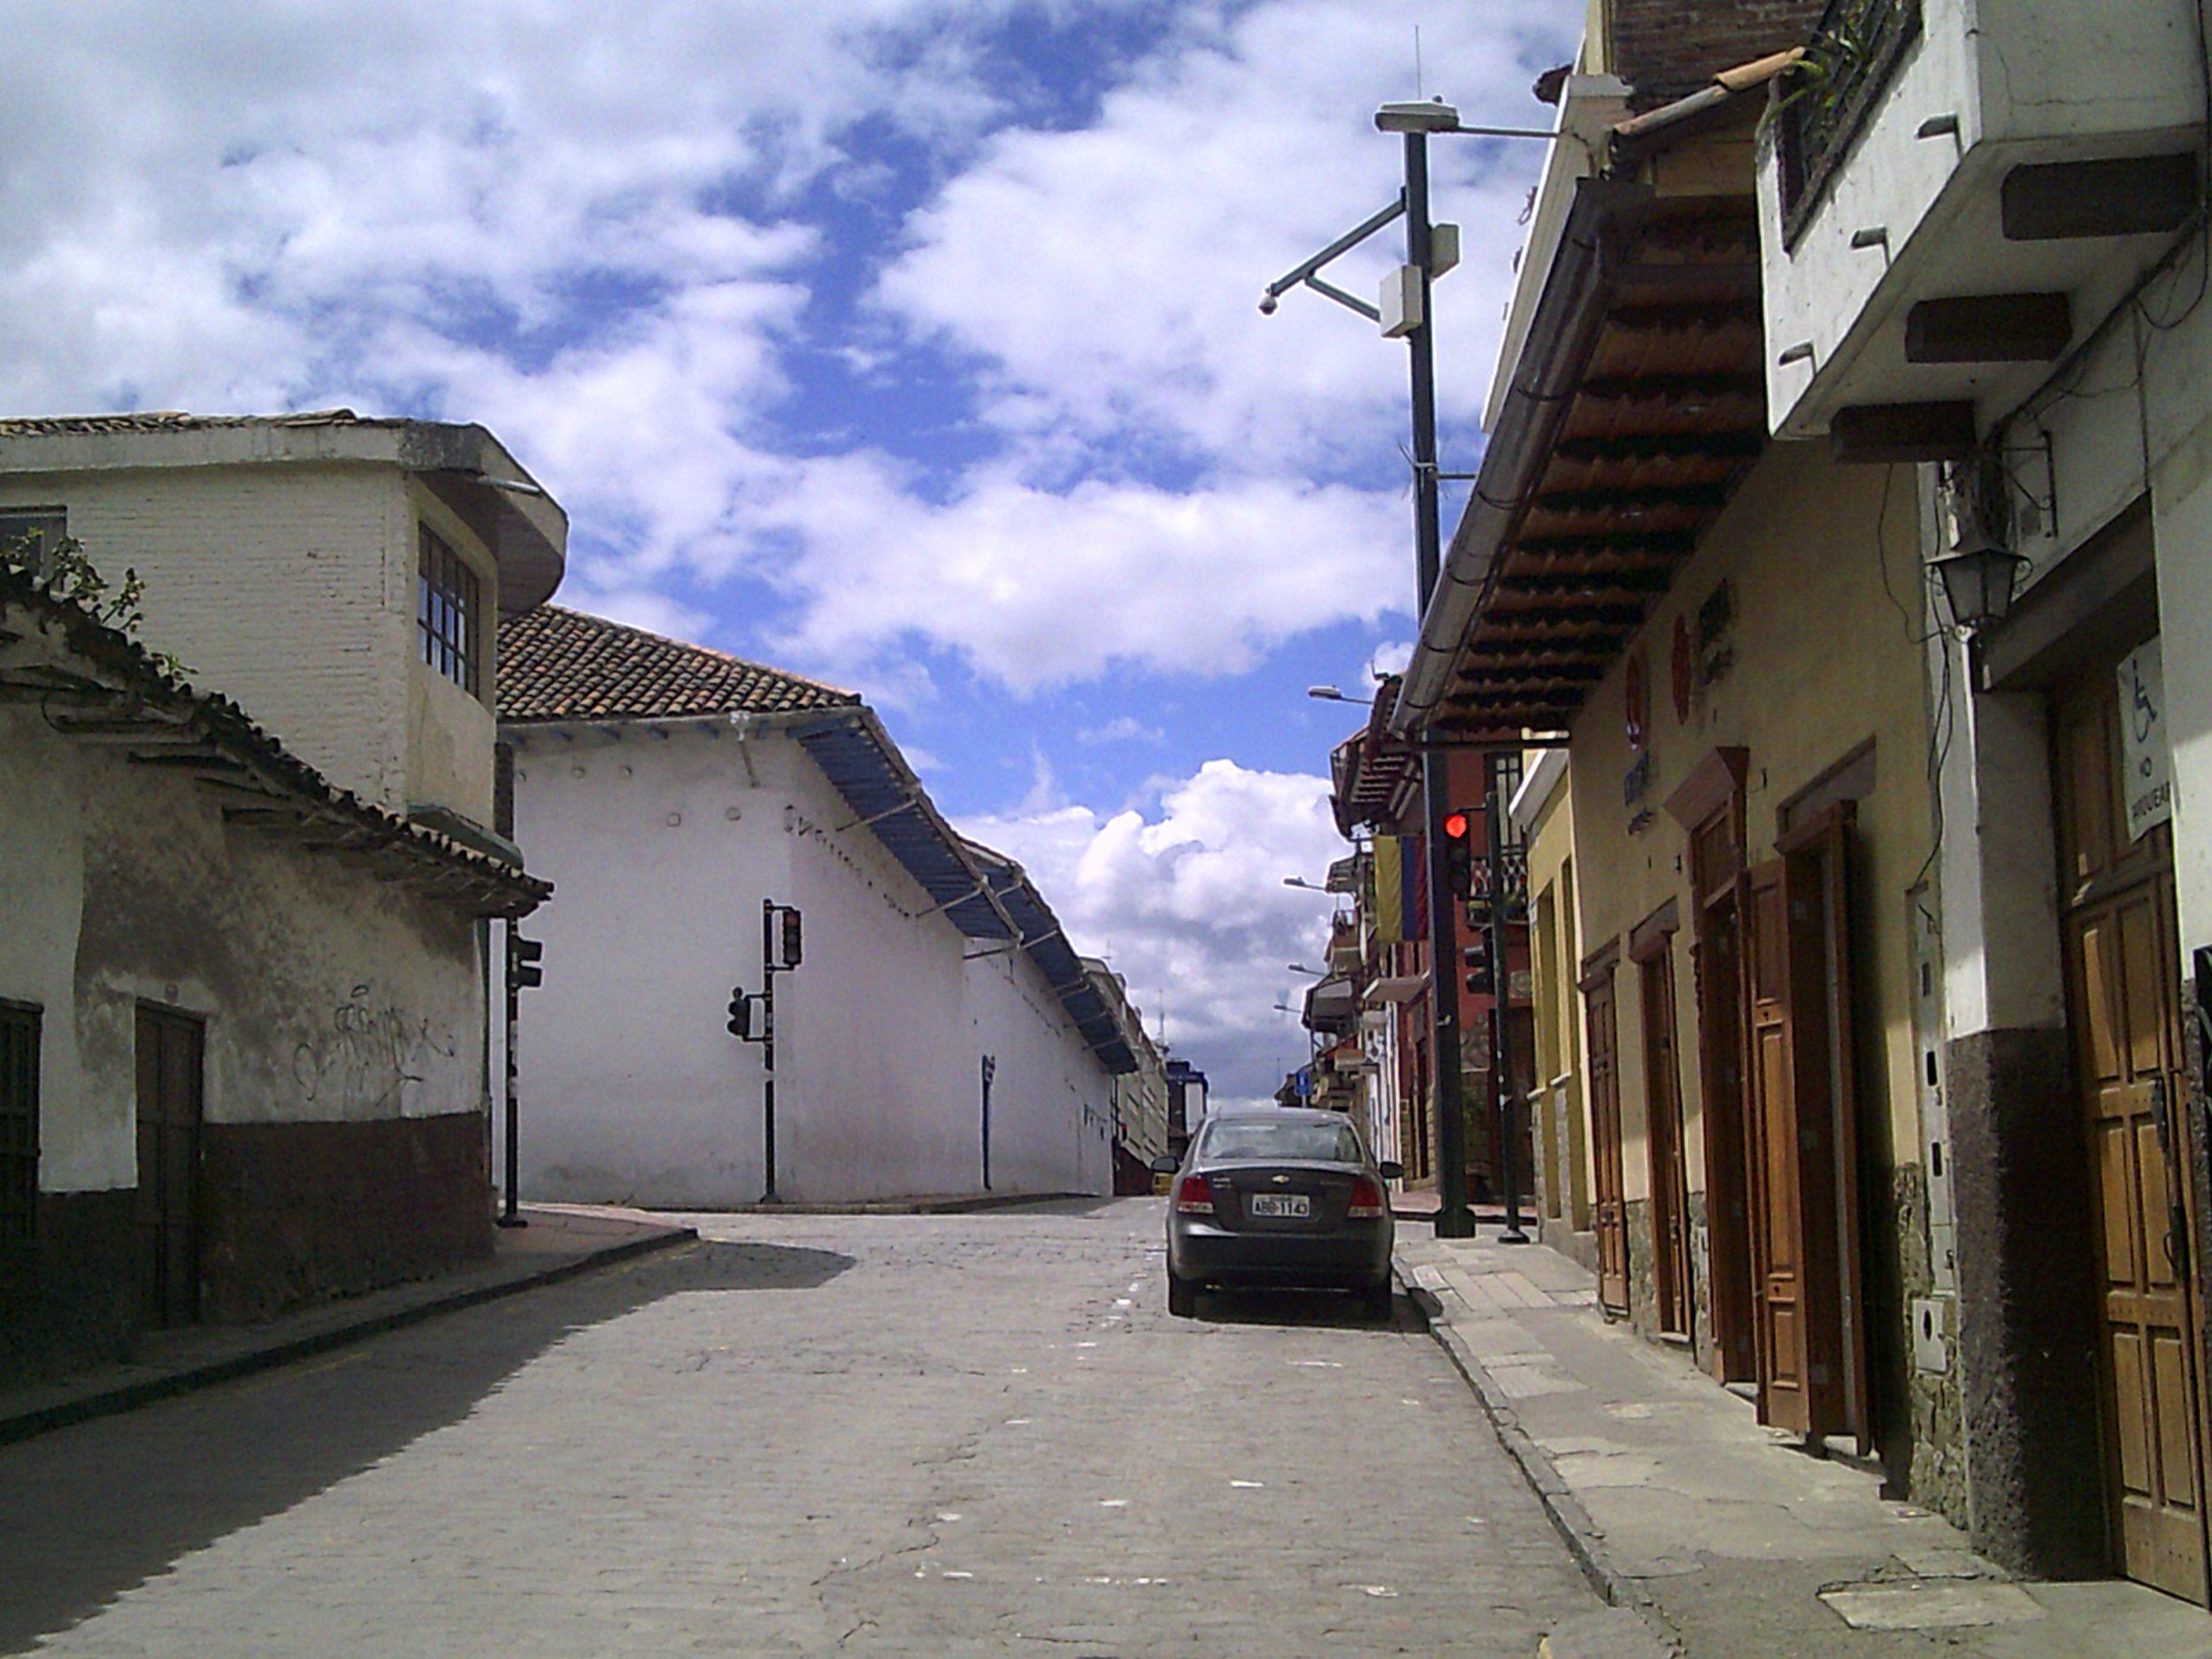 sunny day in Cuenca.jpg